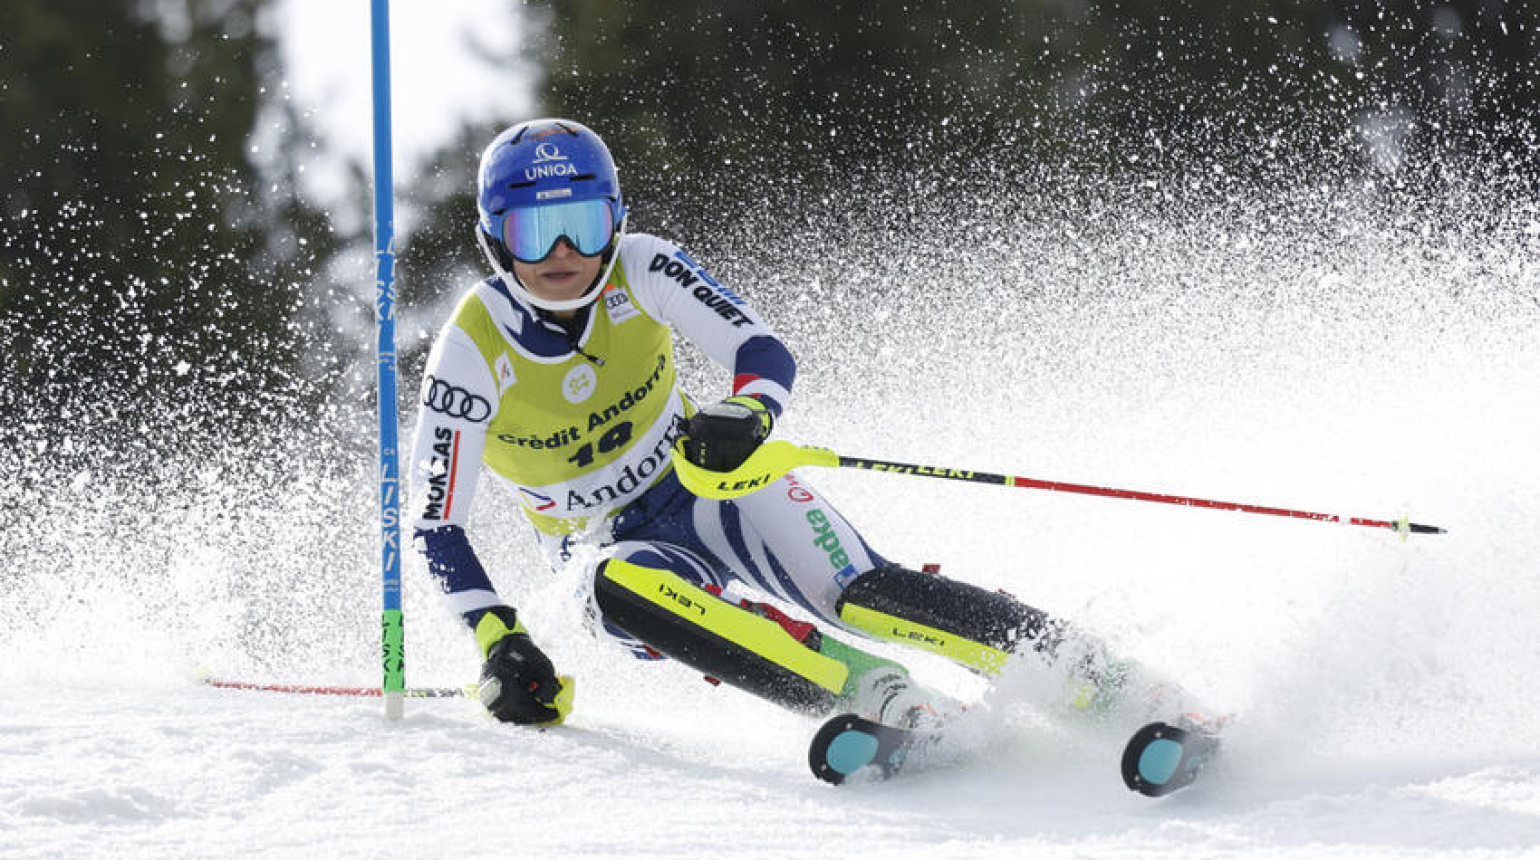 Dubovská uzavřela sezónu skvělým sedmým místem, slalomu kralovala Vlhová